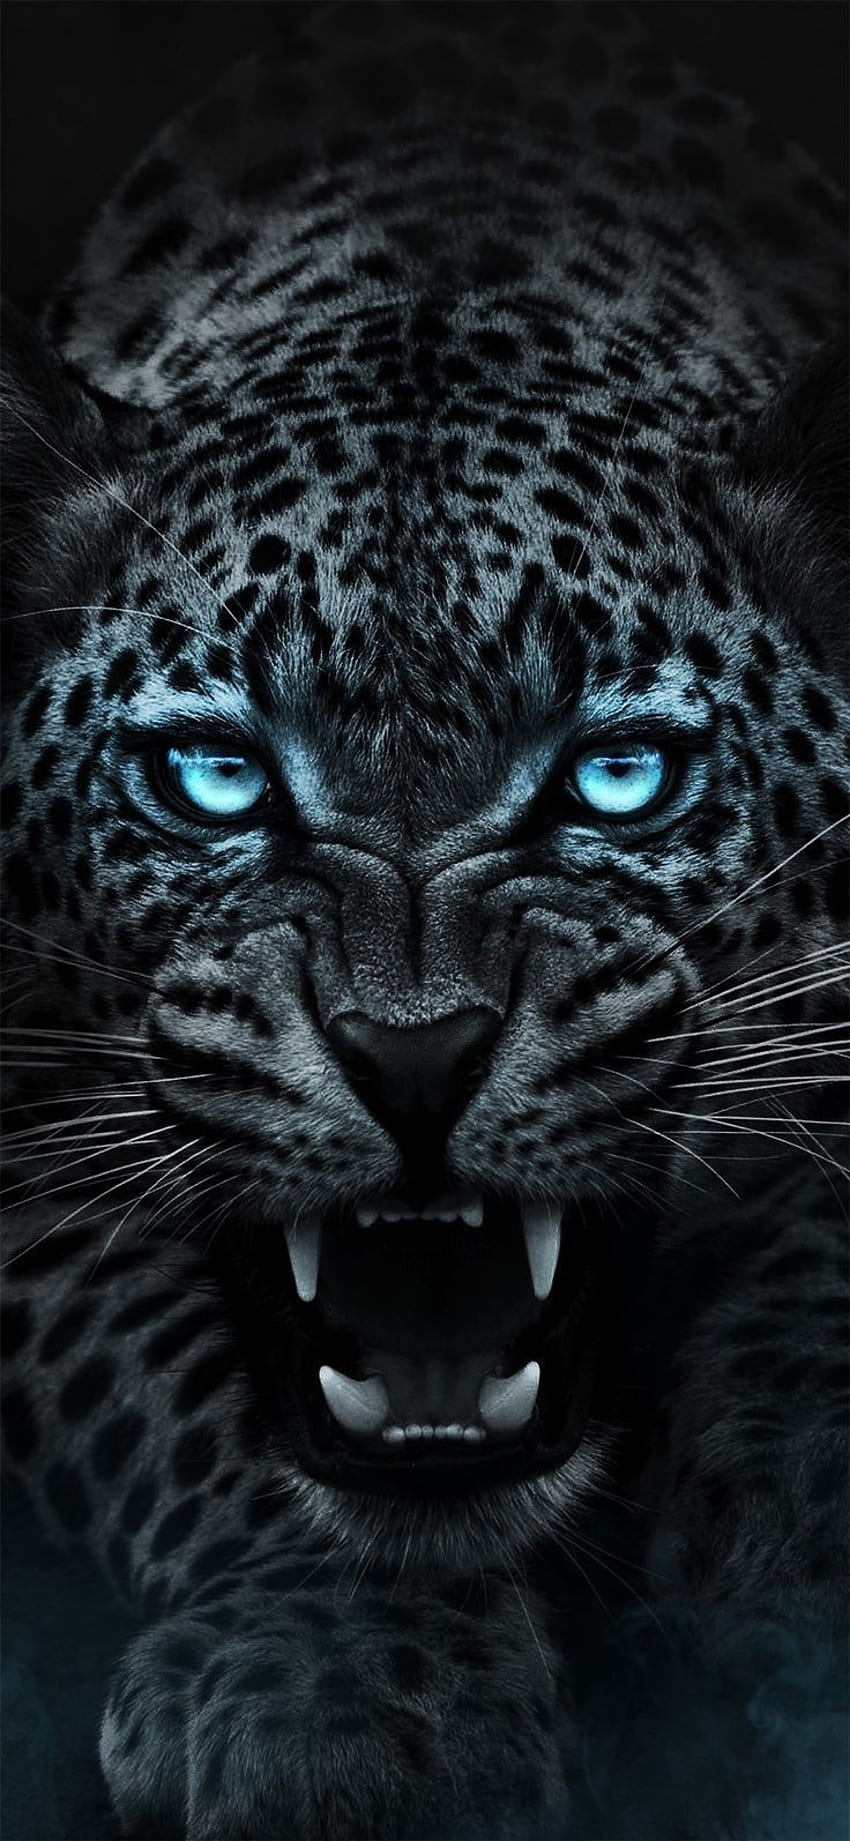 ¡El asombroso Leopardo!. Animal salvaje, animal jaguar, tigre, jaguar enojado fondo de pantalla del teléfono